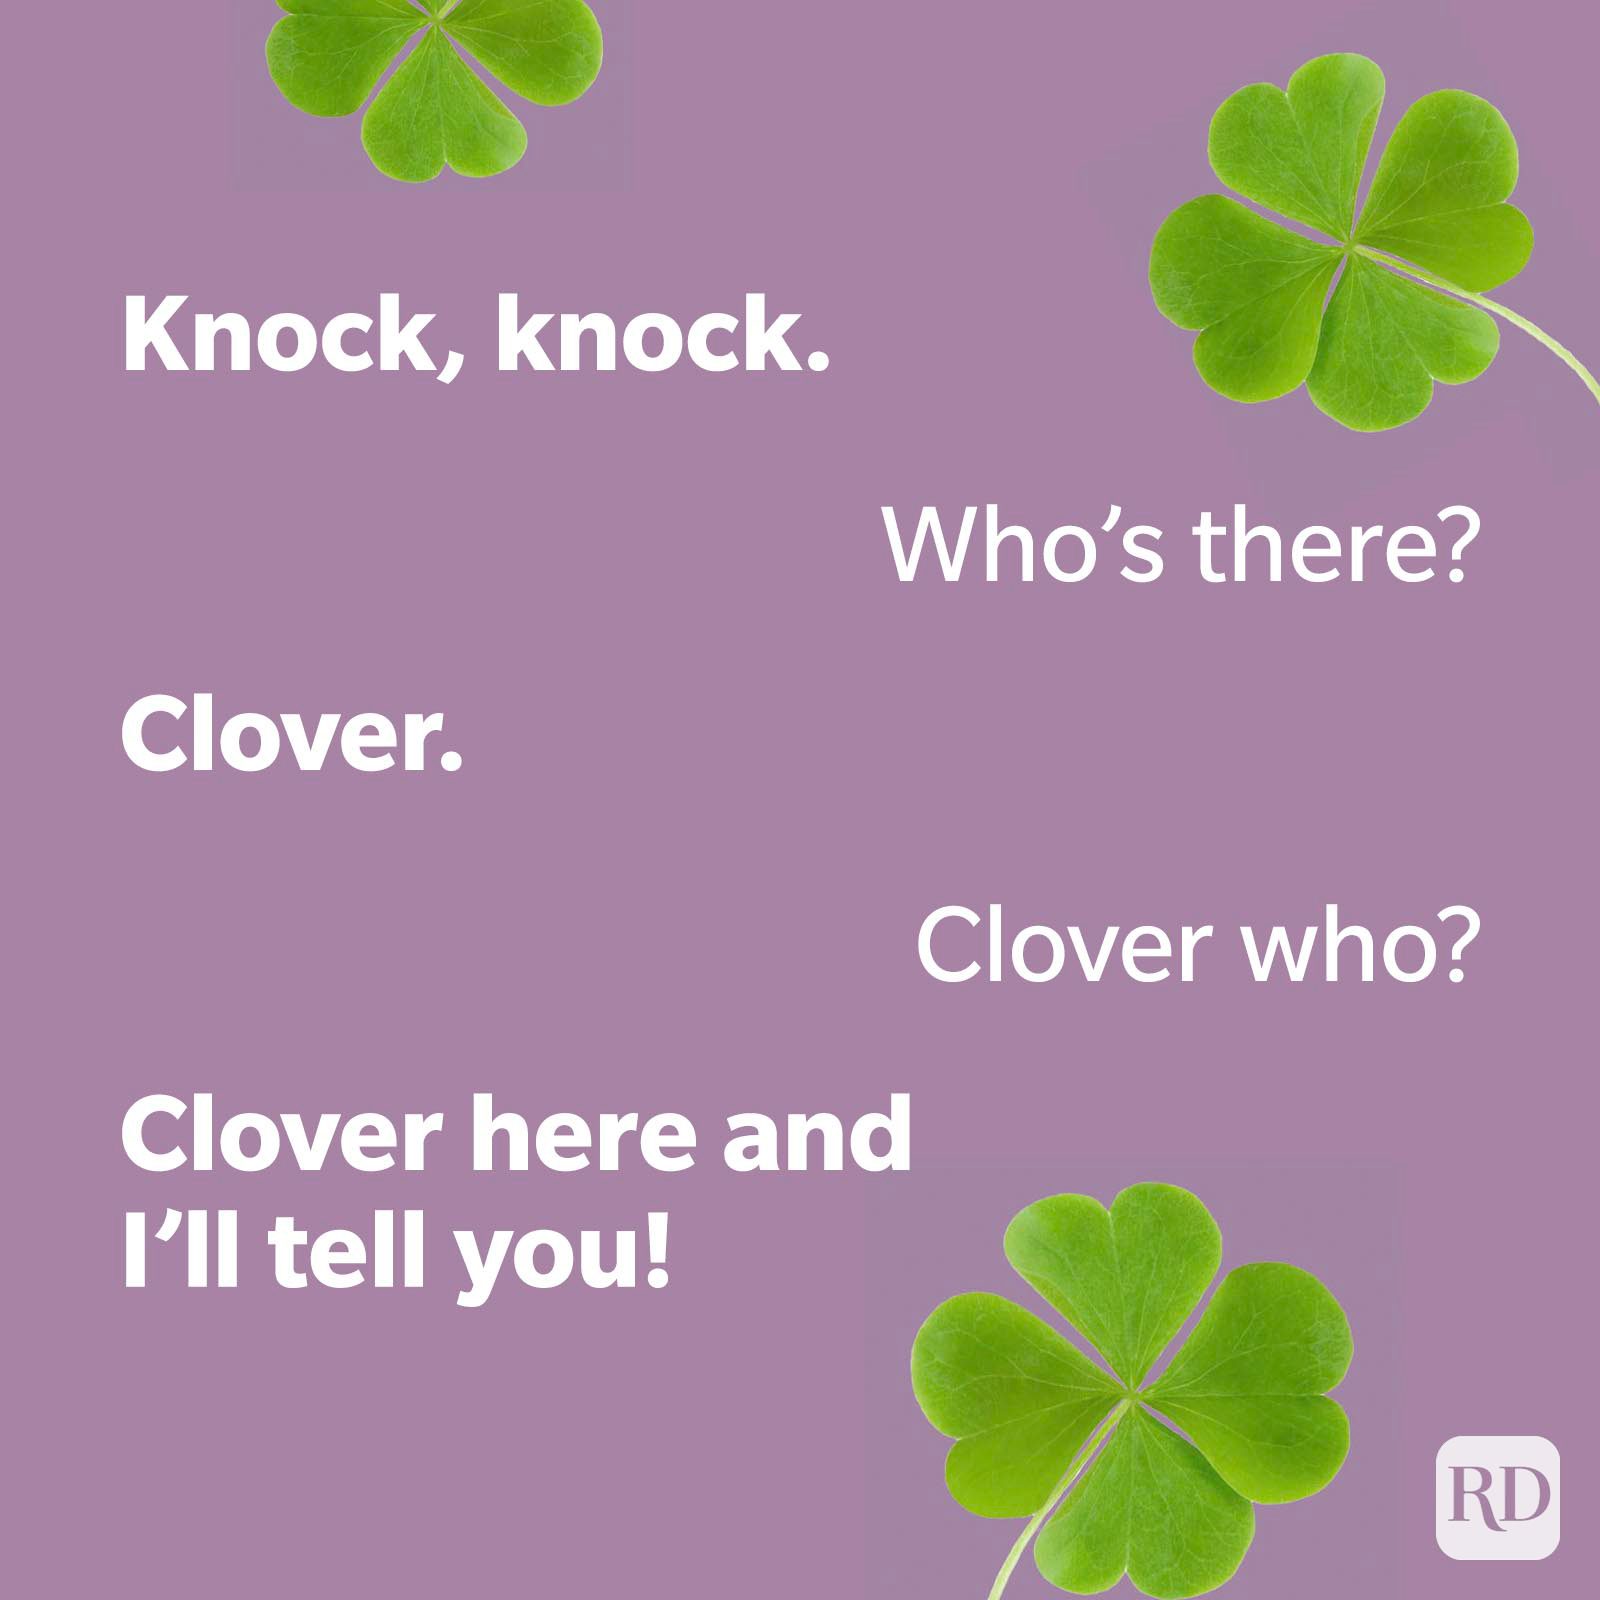 St Patricks Day Knock Knock Joke Clover